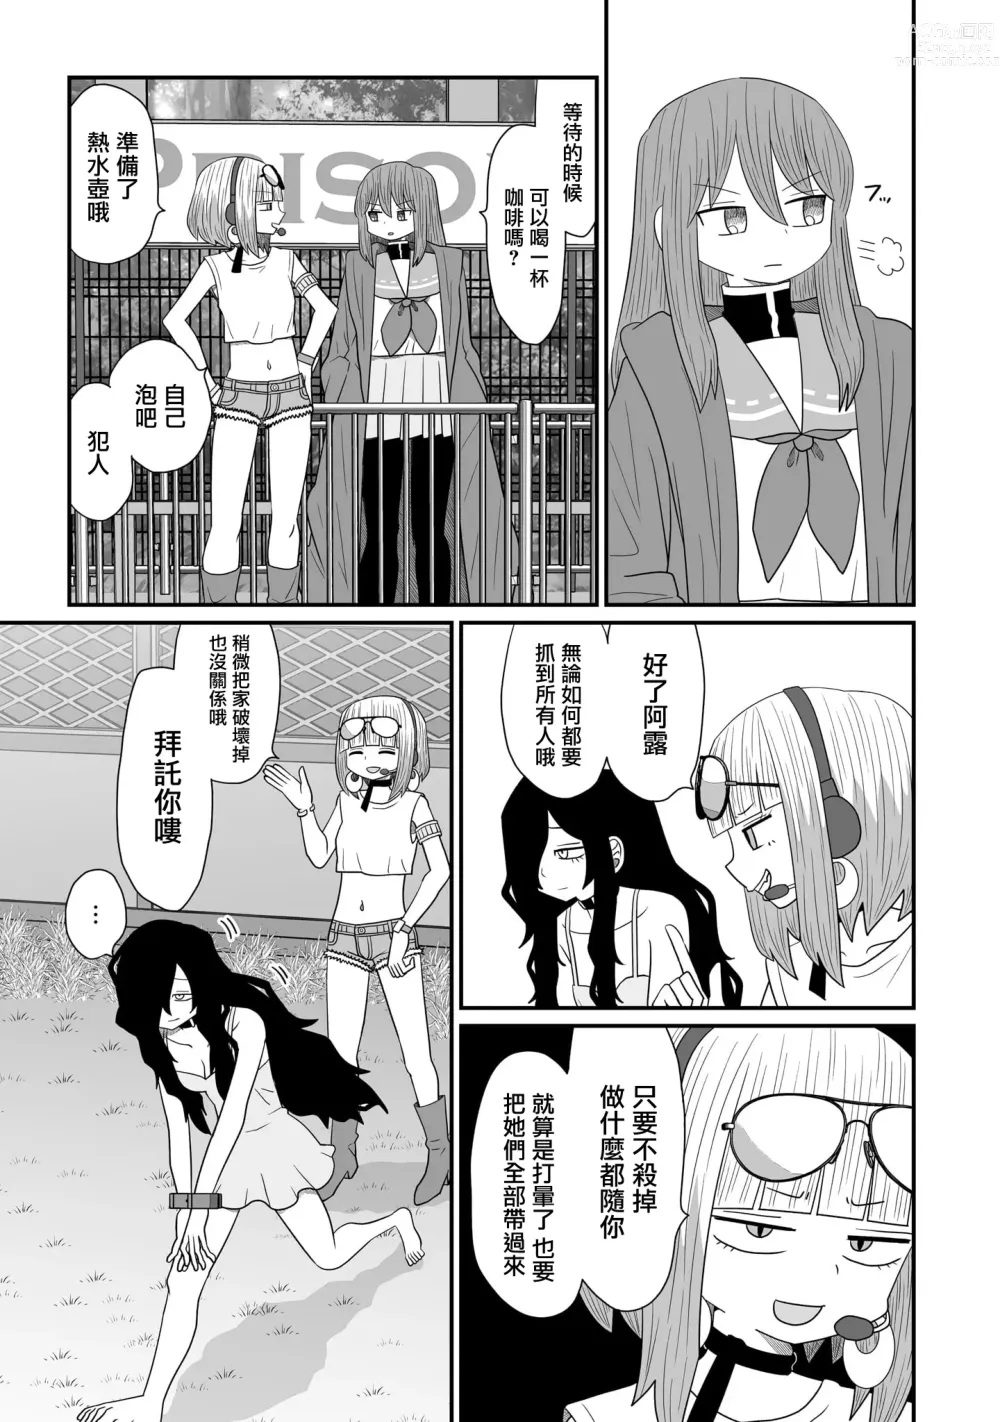 Page 471 of doujinshi Warui ga Watashi wa Yuri ja Nai 丨 雖然很抱歉但我不是百合